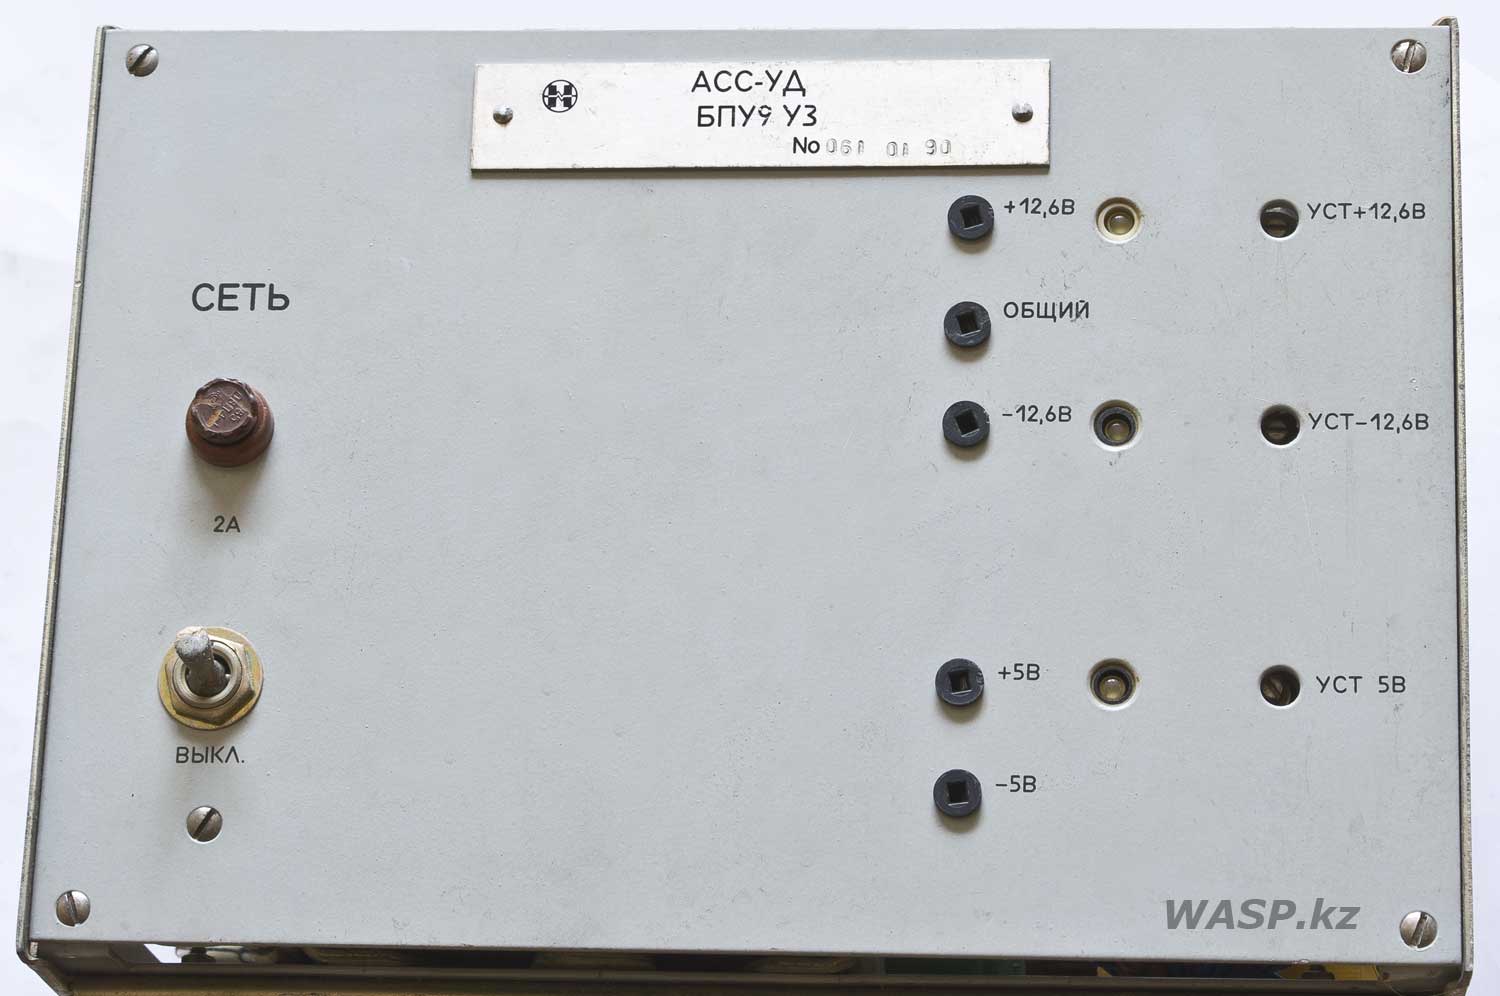 БПУ9 УЗ блок питания унифицированный для системы АСС-УД 1990 год